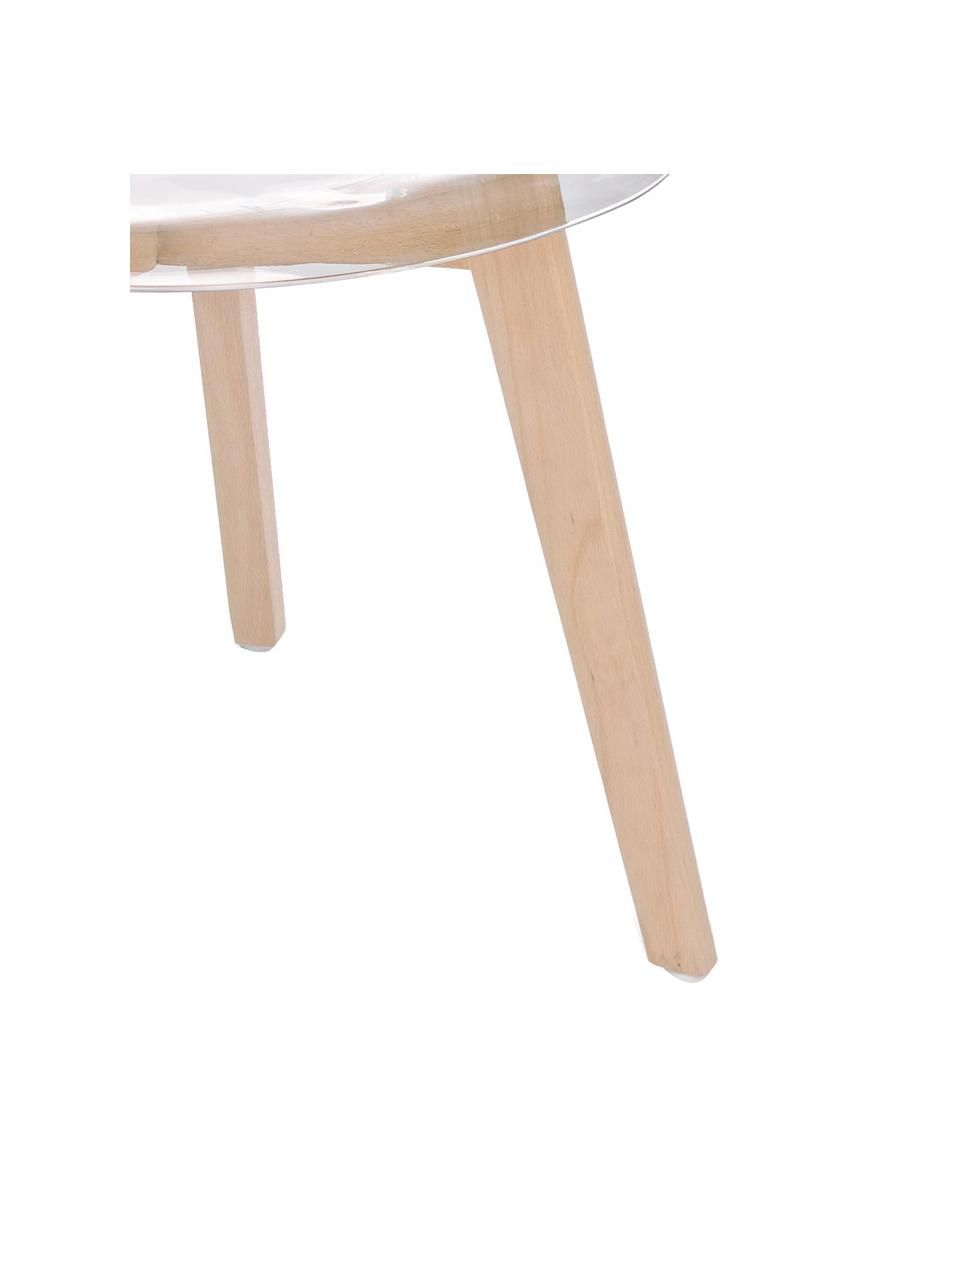 Transparentní židle Easy, 2 ks, Transparentní, bukové dřevo